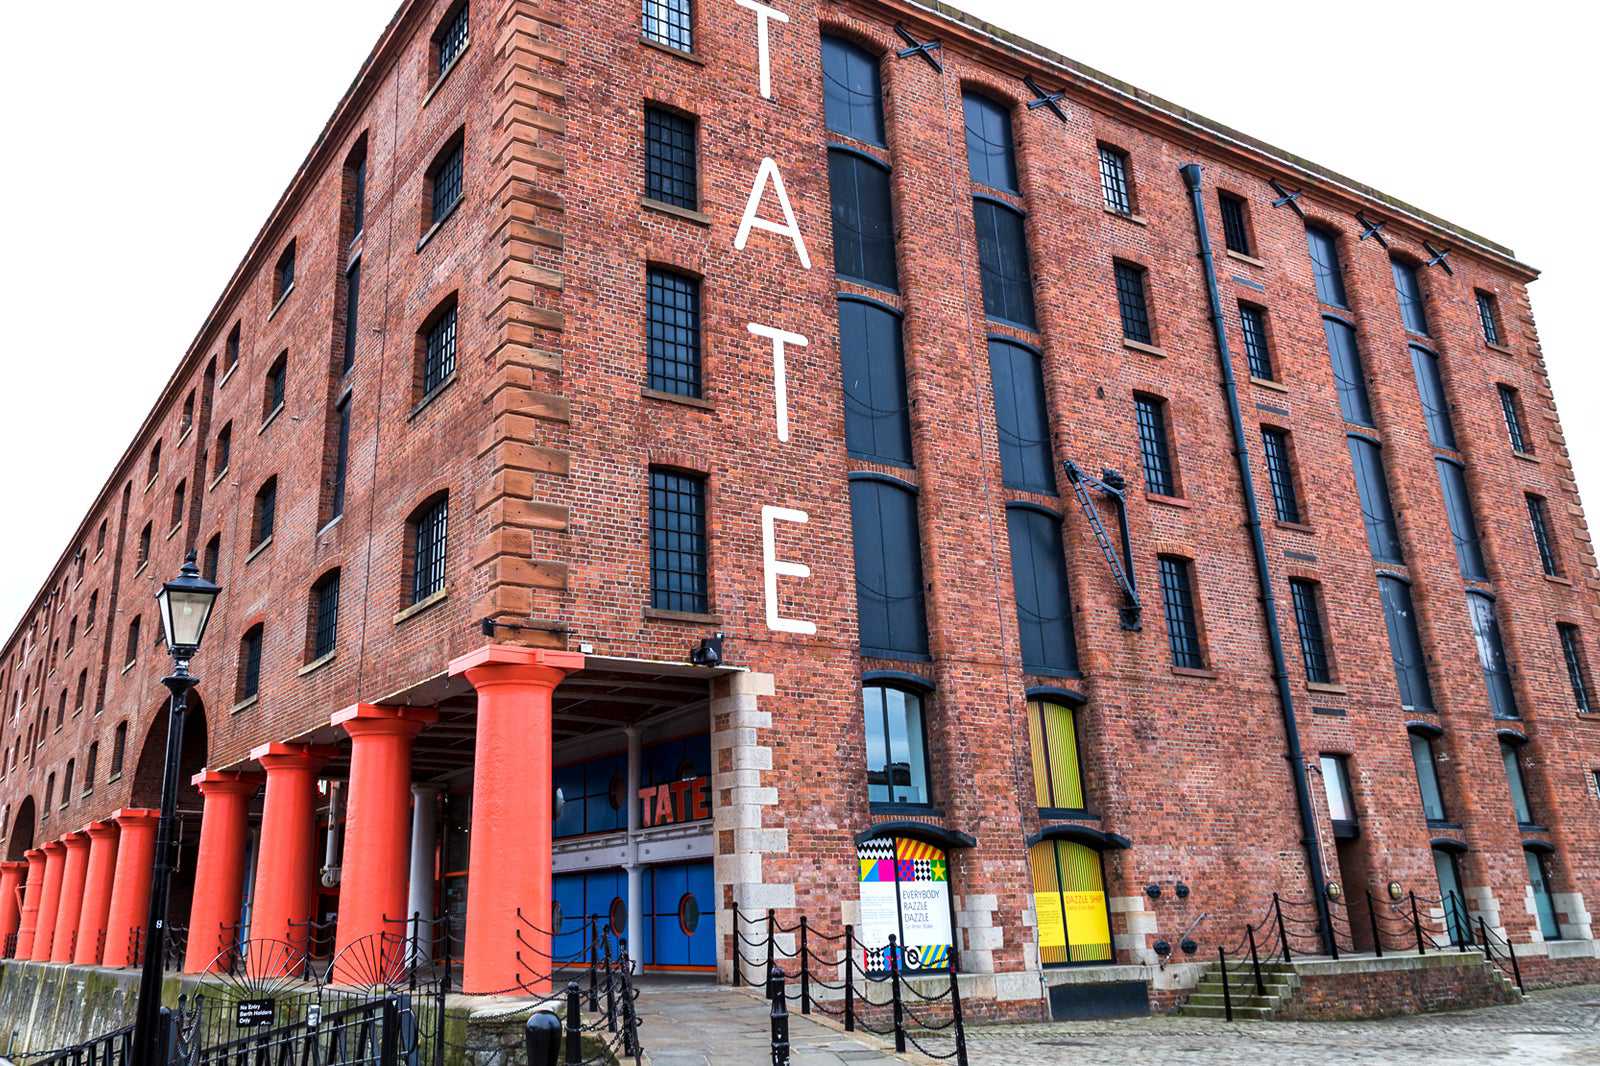 No te lo pierdas: Tate Liverpool